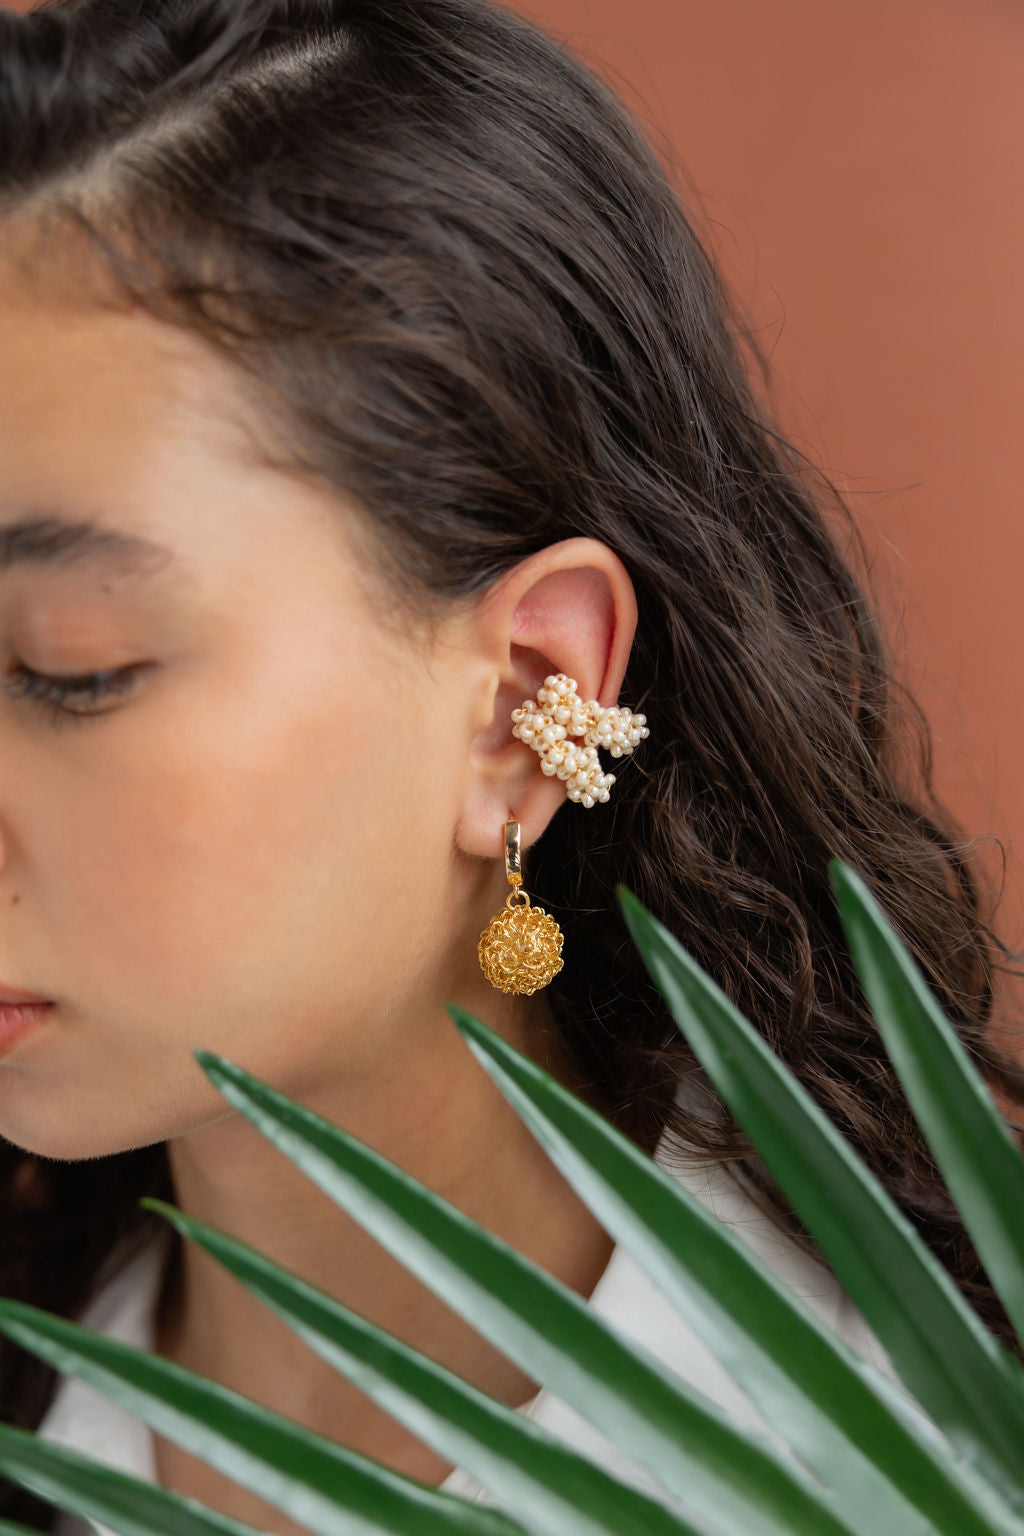 Nest hoop earrings in gold